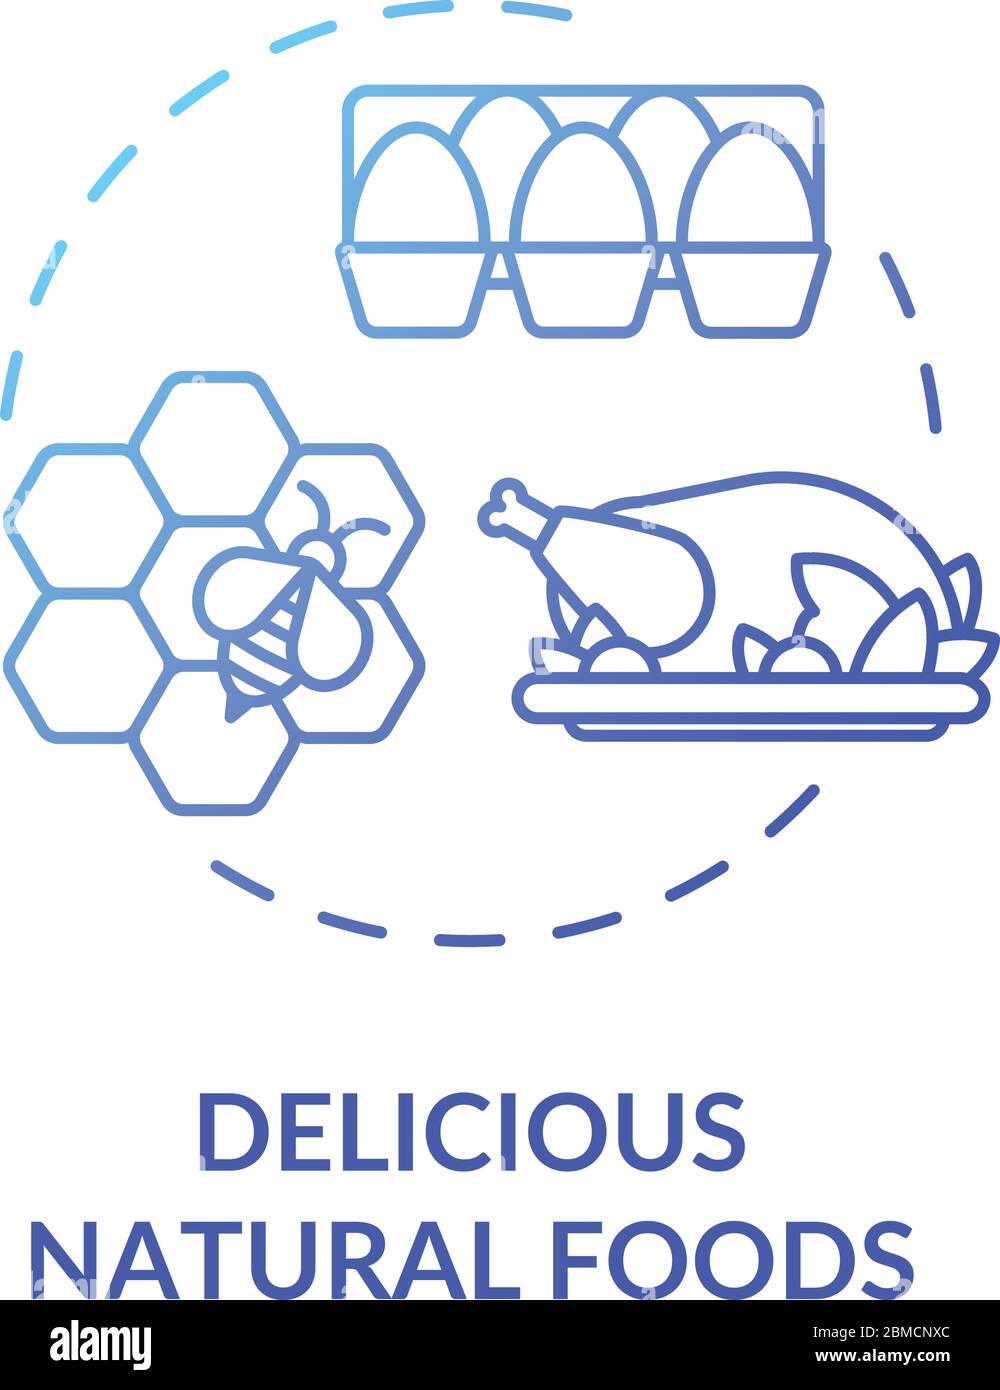 Köstliche natürliche Lebensmittel blau Konzept Symbol. Lokale landwirtschaftliche Produktion. Hühnerfleisch und Milchprodukte. Honig und Eier. Bio-Produkte Idee dünne Linie Illustration Stock Vektor